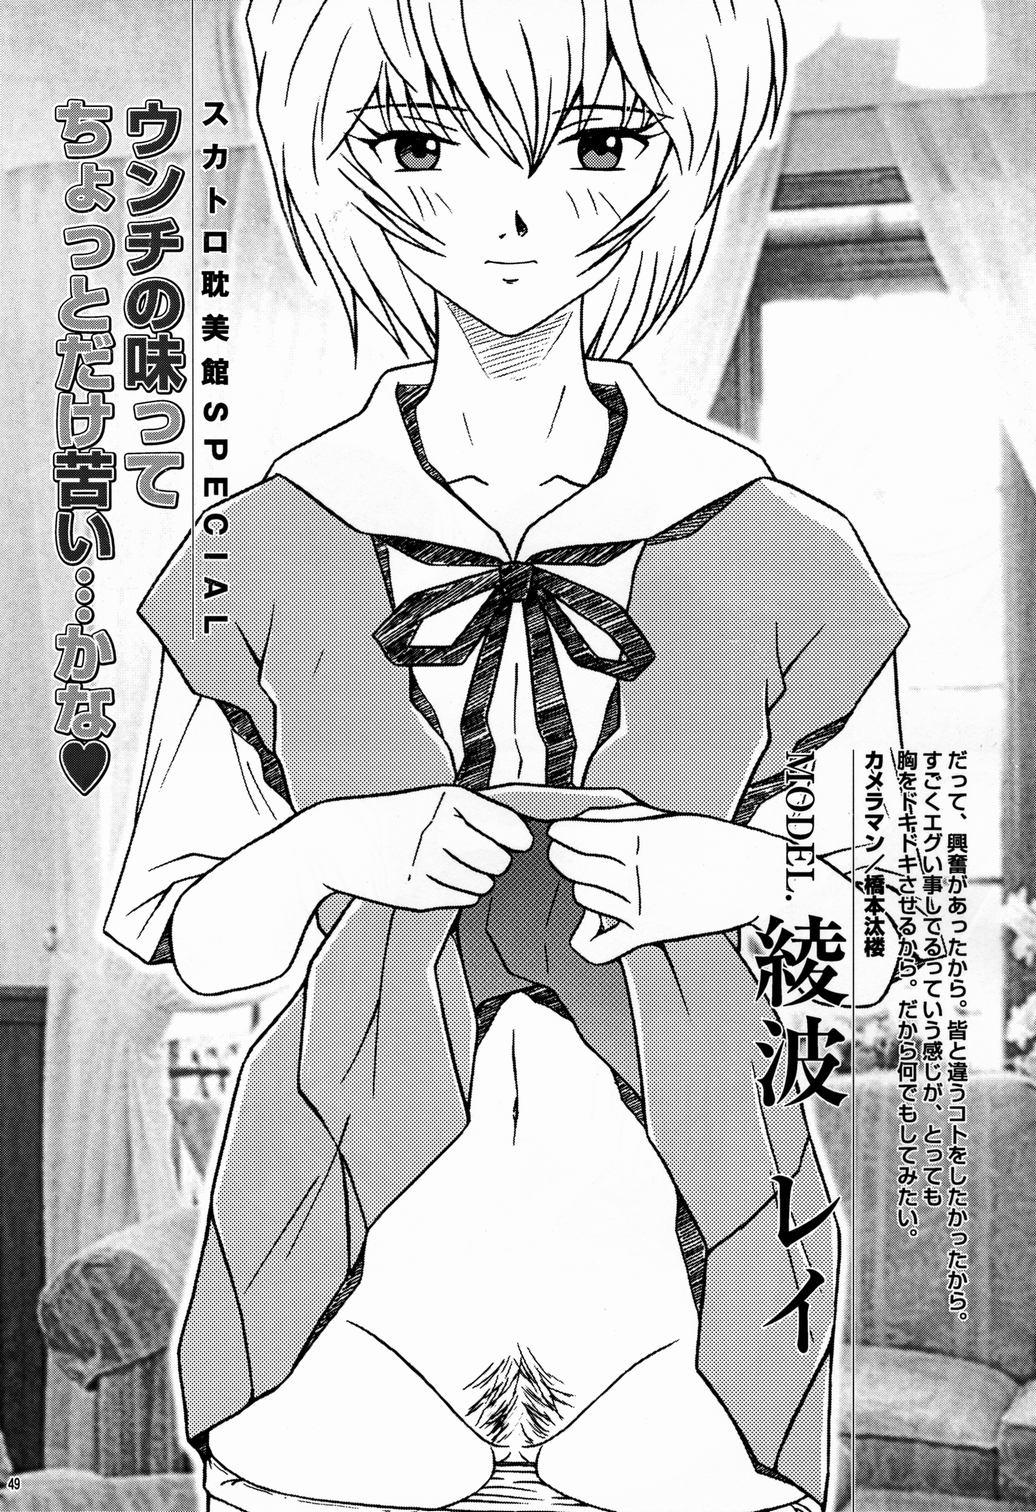 Saku-chan Club Vol. 6 48